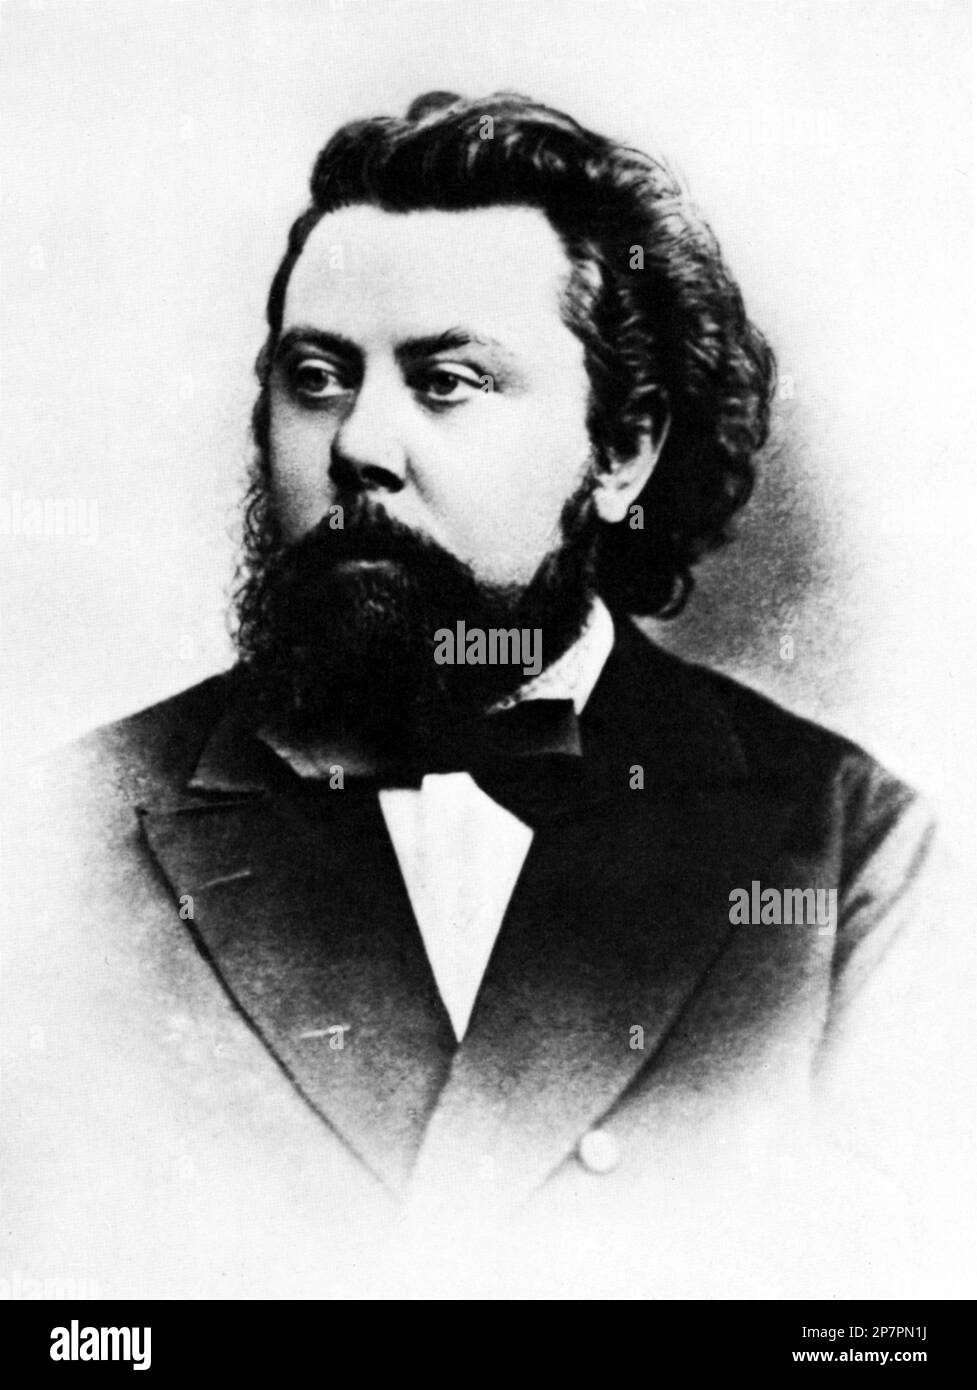 1855 c, RUSSIA : il compositore russo MODEST MOUSSORGSKY ( 1839 - 1881 ) , membro dei CINQUE . Il suo BORIS GODUNOV è la più famosa Opera russa mai composta . Ha scritto molte altre opere , opere sinfoniche e canzoni . - COMPOSITORE - OPERA LIRICA - CLASSICA - CLASSICA - RITRATTO - RITRATTO - MUSICA - MUSICA - MUSICA - BARBA - PAPILLON - FIOCCO - CRAVATTA - CRAVATTA - MUSSORGSKY - MOUSSORGSKI - MUSSORGSKI -- ARCHIVIO GBB Foto Stock